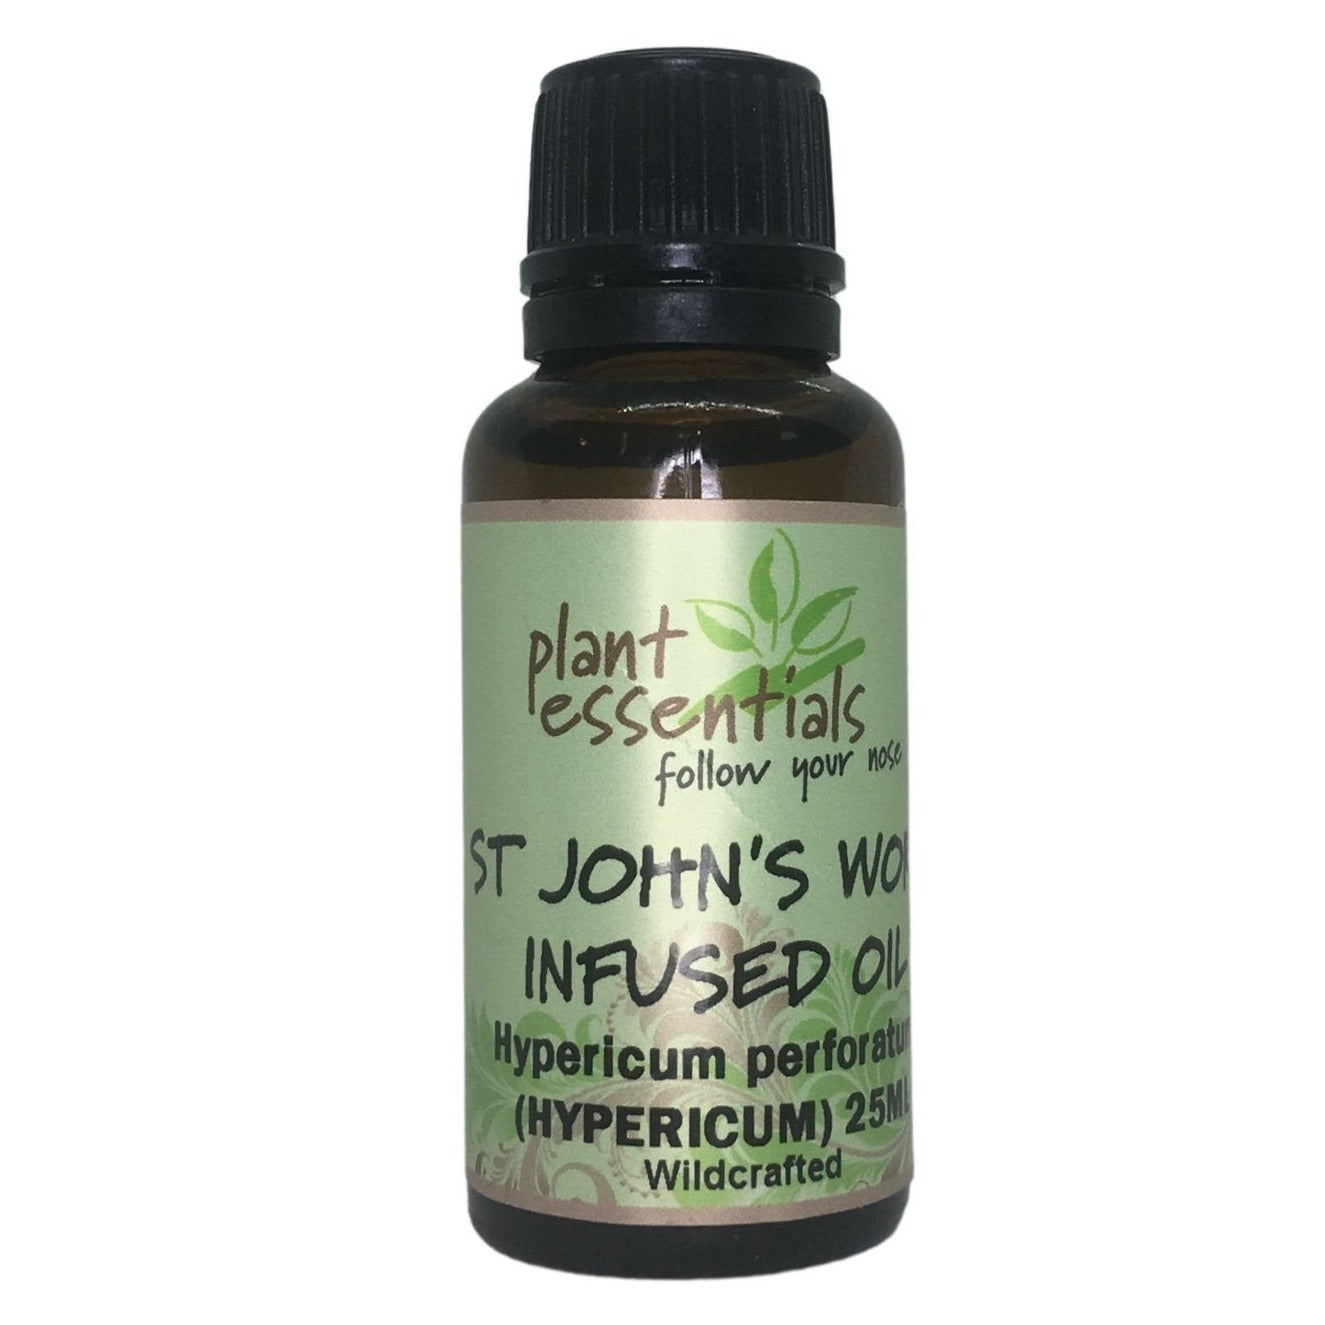 St John's Wort Infused Oil 25ml